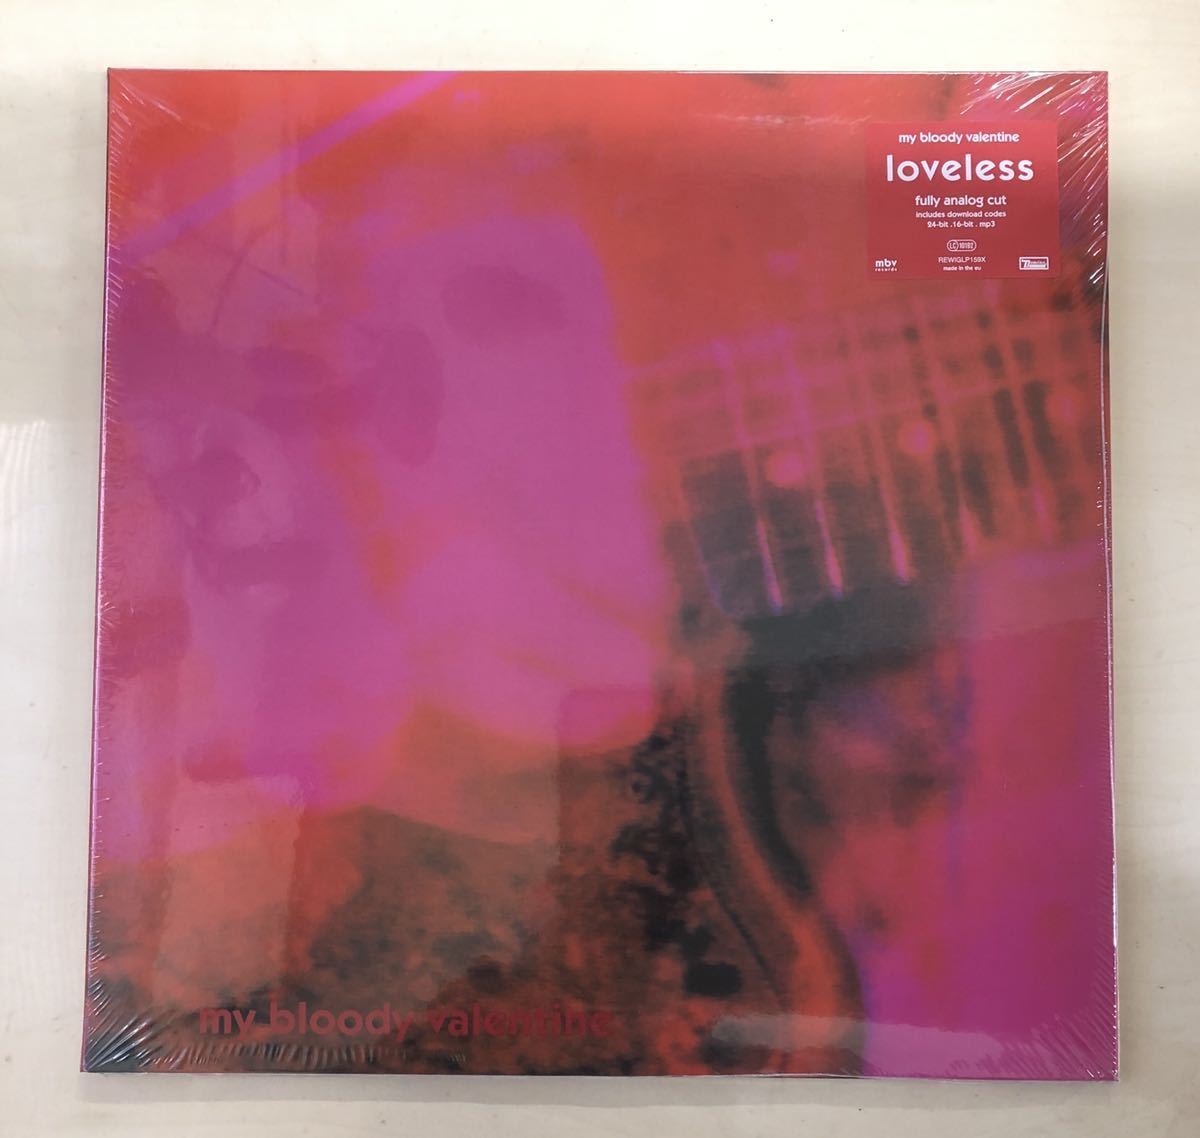 12250円 お礼や感謝伝えるプチギフト 新品 LP My Bloody Valentine デラックス盤 3枚セット